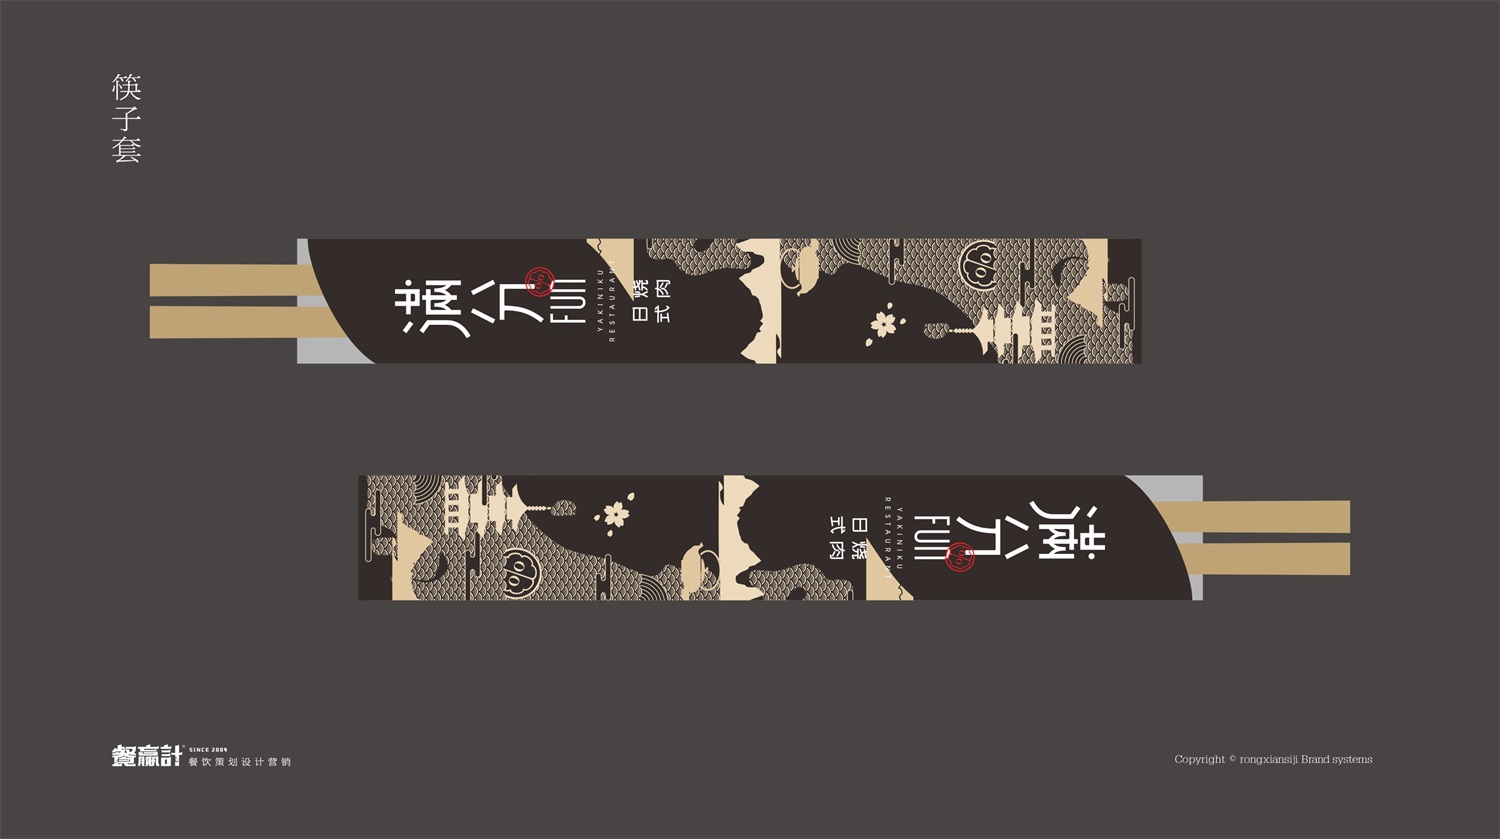 日式烧肉餐饮品牌满分东莞店筷子套形象设计